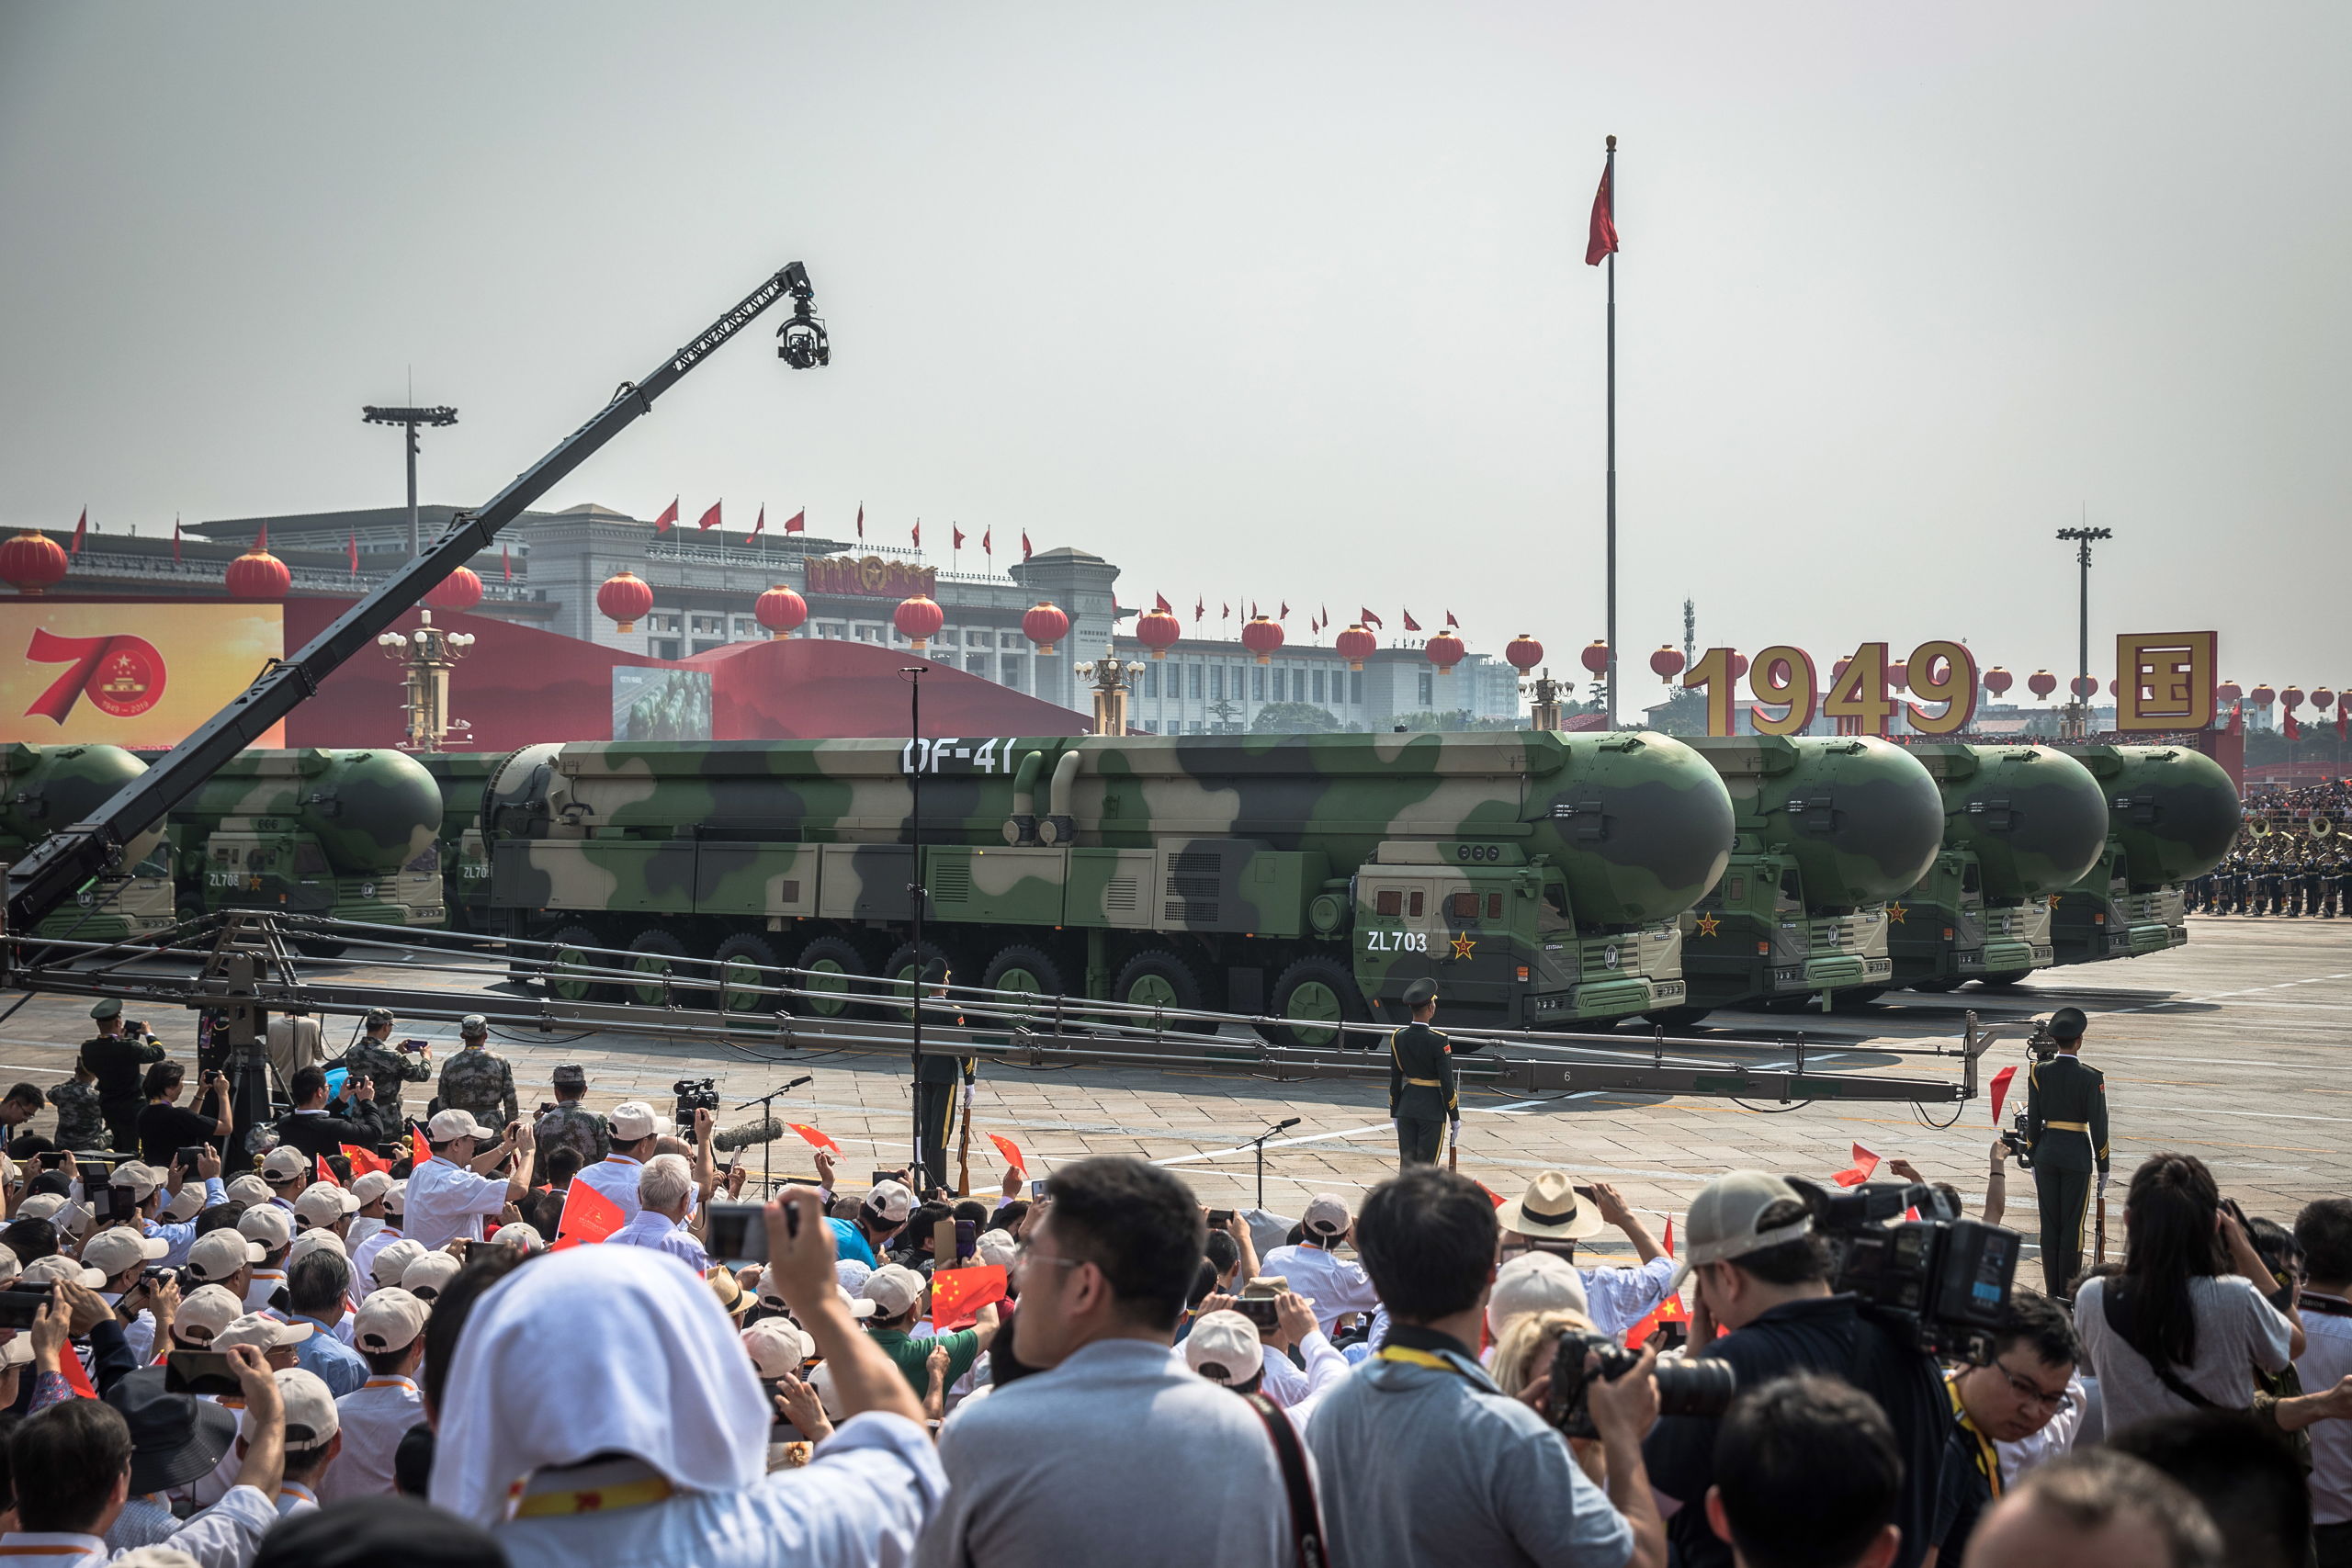 DF-41 intercontinentale nucleaire raketten op Tiananmenplein tijdens een militaire parade in Beijing. 